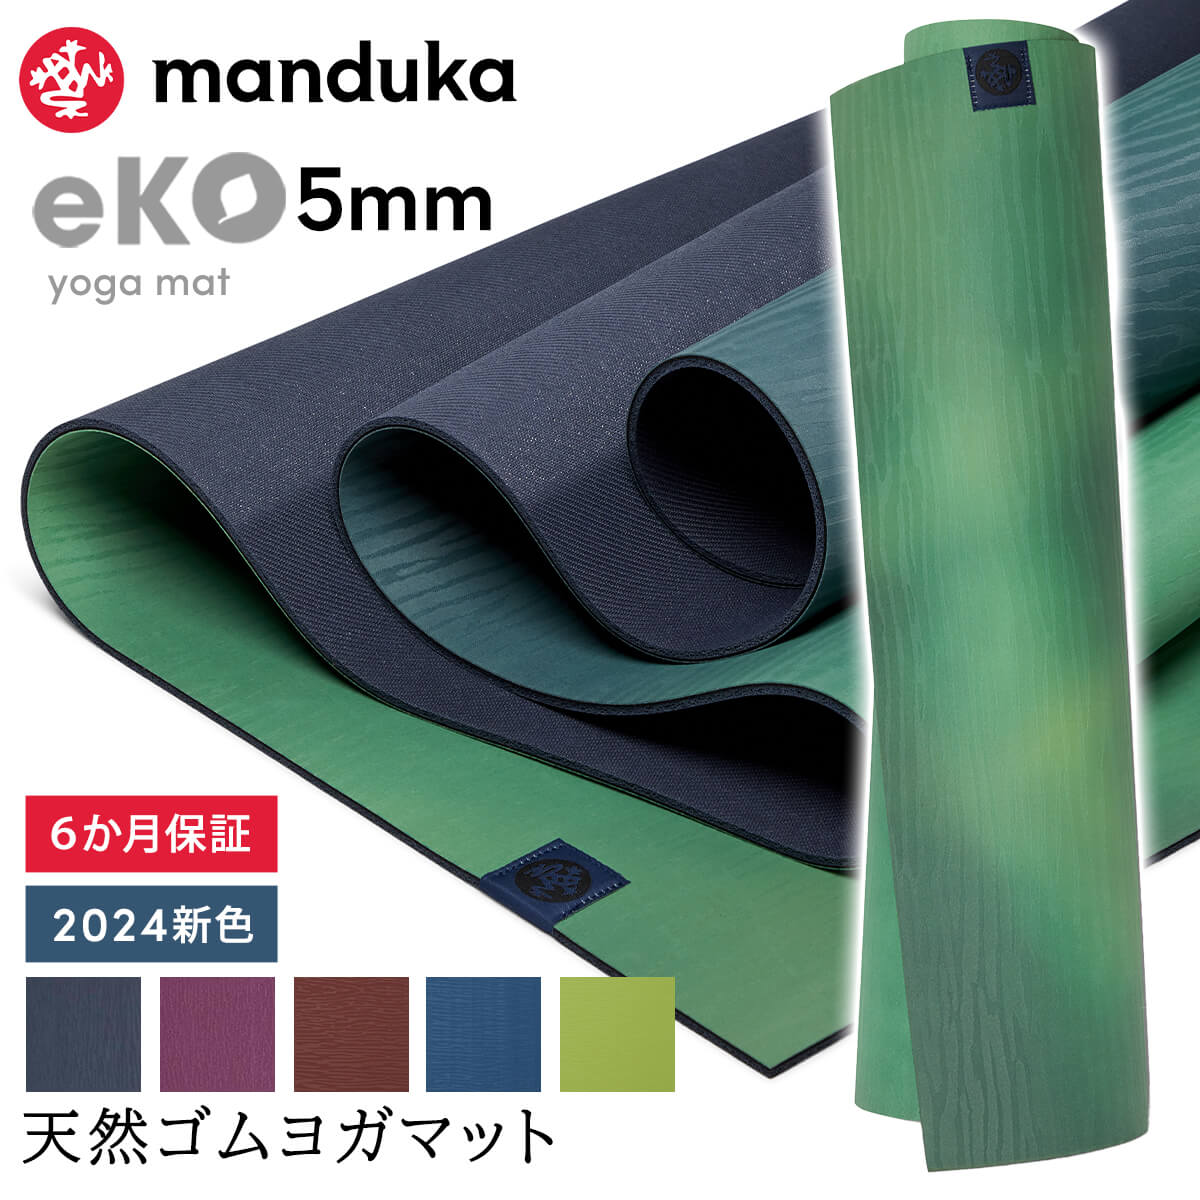 マンドゥカ Manduka ヨガマット エコ 5mm 《6か月保証》日本正規品 | eKO yoga mat 筋トレ ピラティス トレーニング 天然ゴム 柄 24SS「TR」001 RVPA 401105111